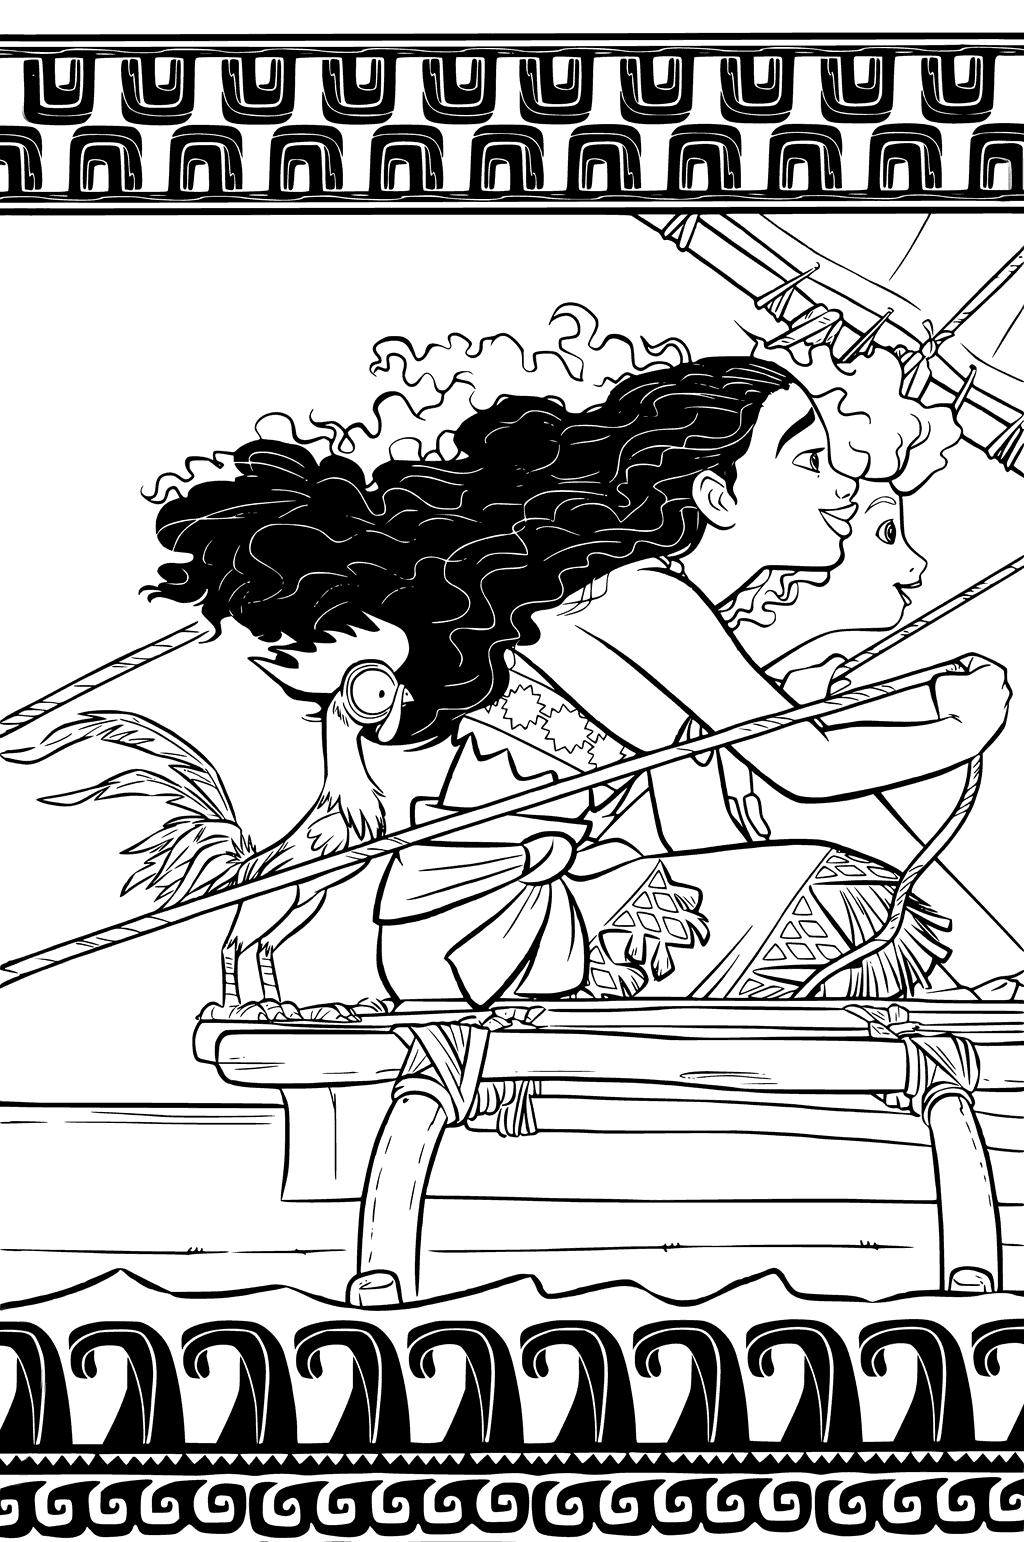 Раскраски к современному мультфильму Моана для детей  Раскраска принцесса Моана и петух Хей-хей на корабле